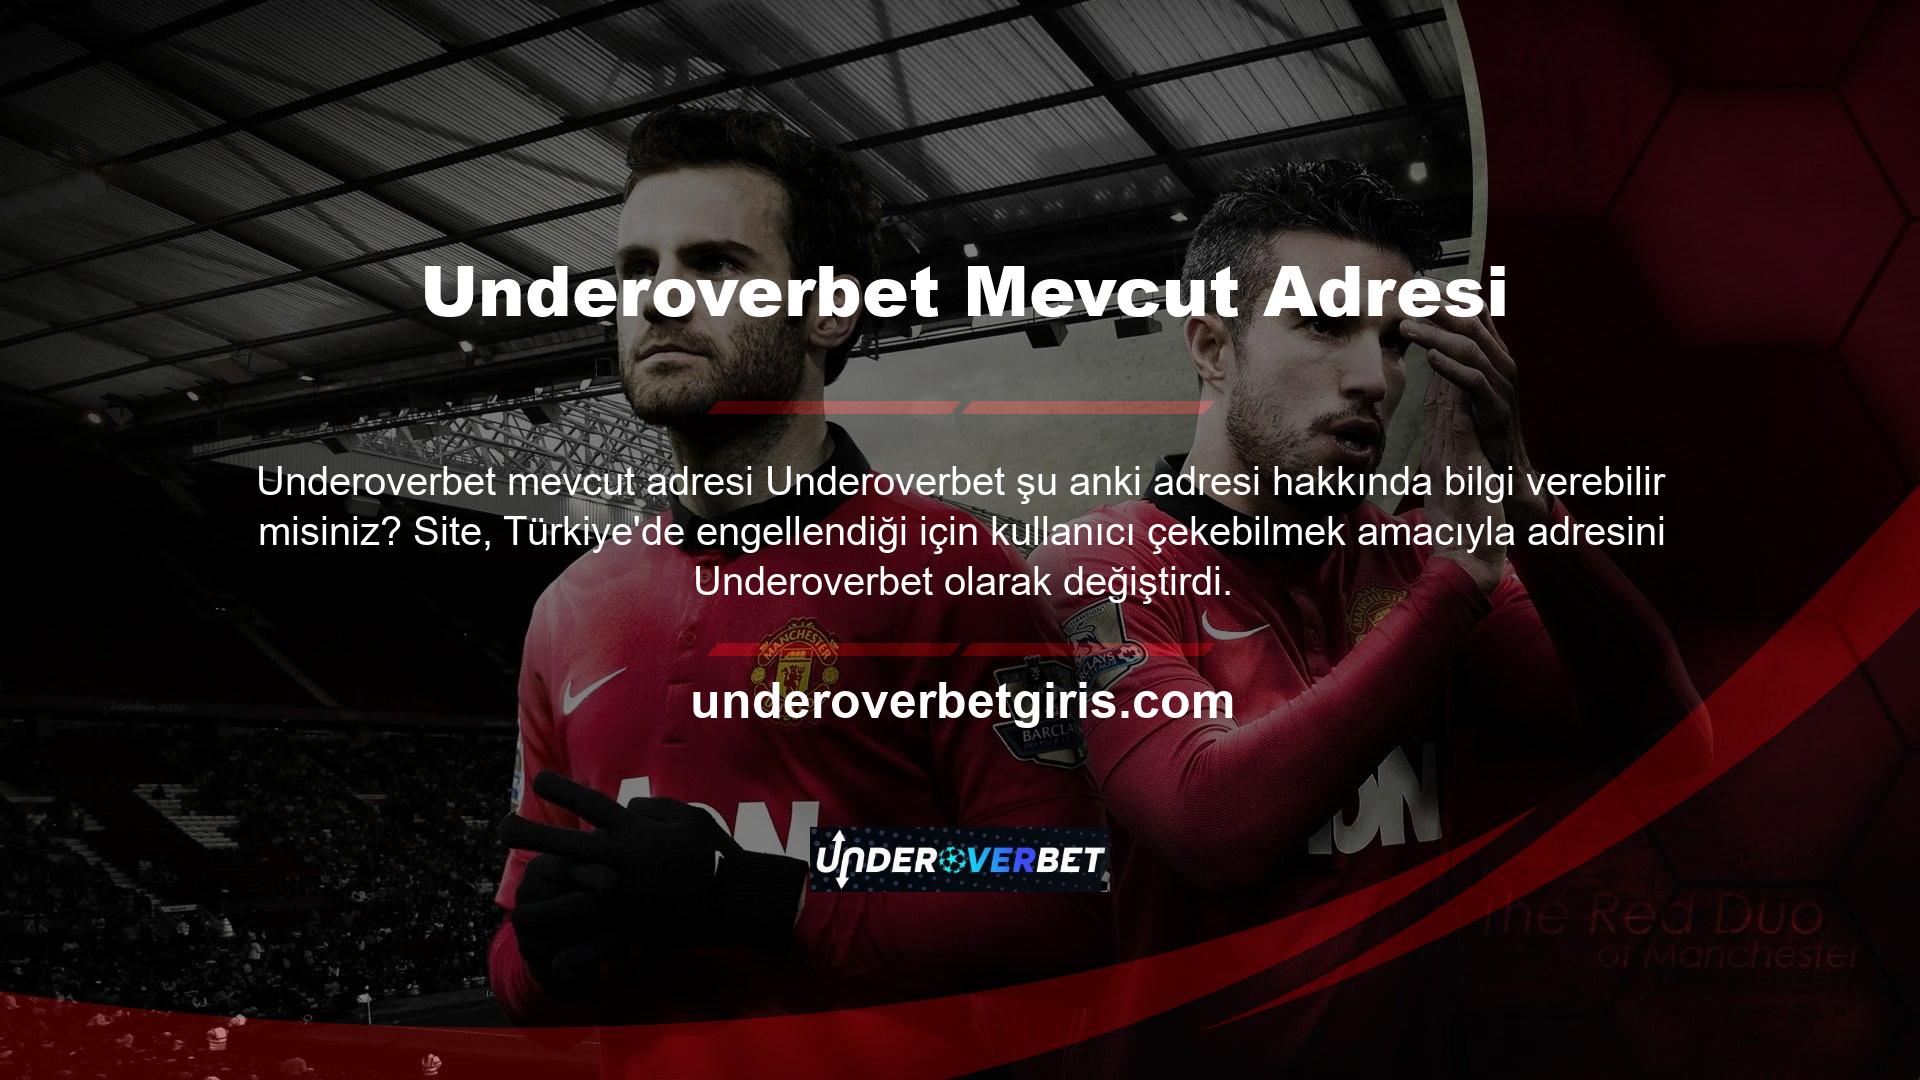 Türkiye'de insanların hesap açmasına, yatırım yapmasına ve kar elde etmesine olanak tanıyan tanınmış bir işletme olan Underoverbet kapatıldı